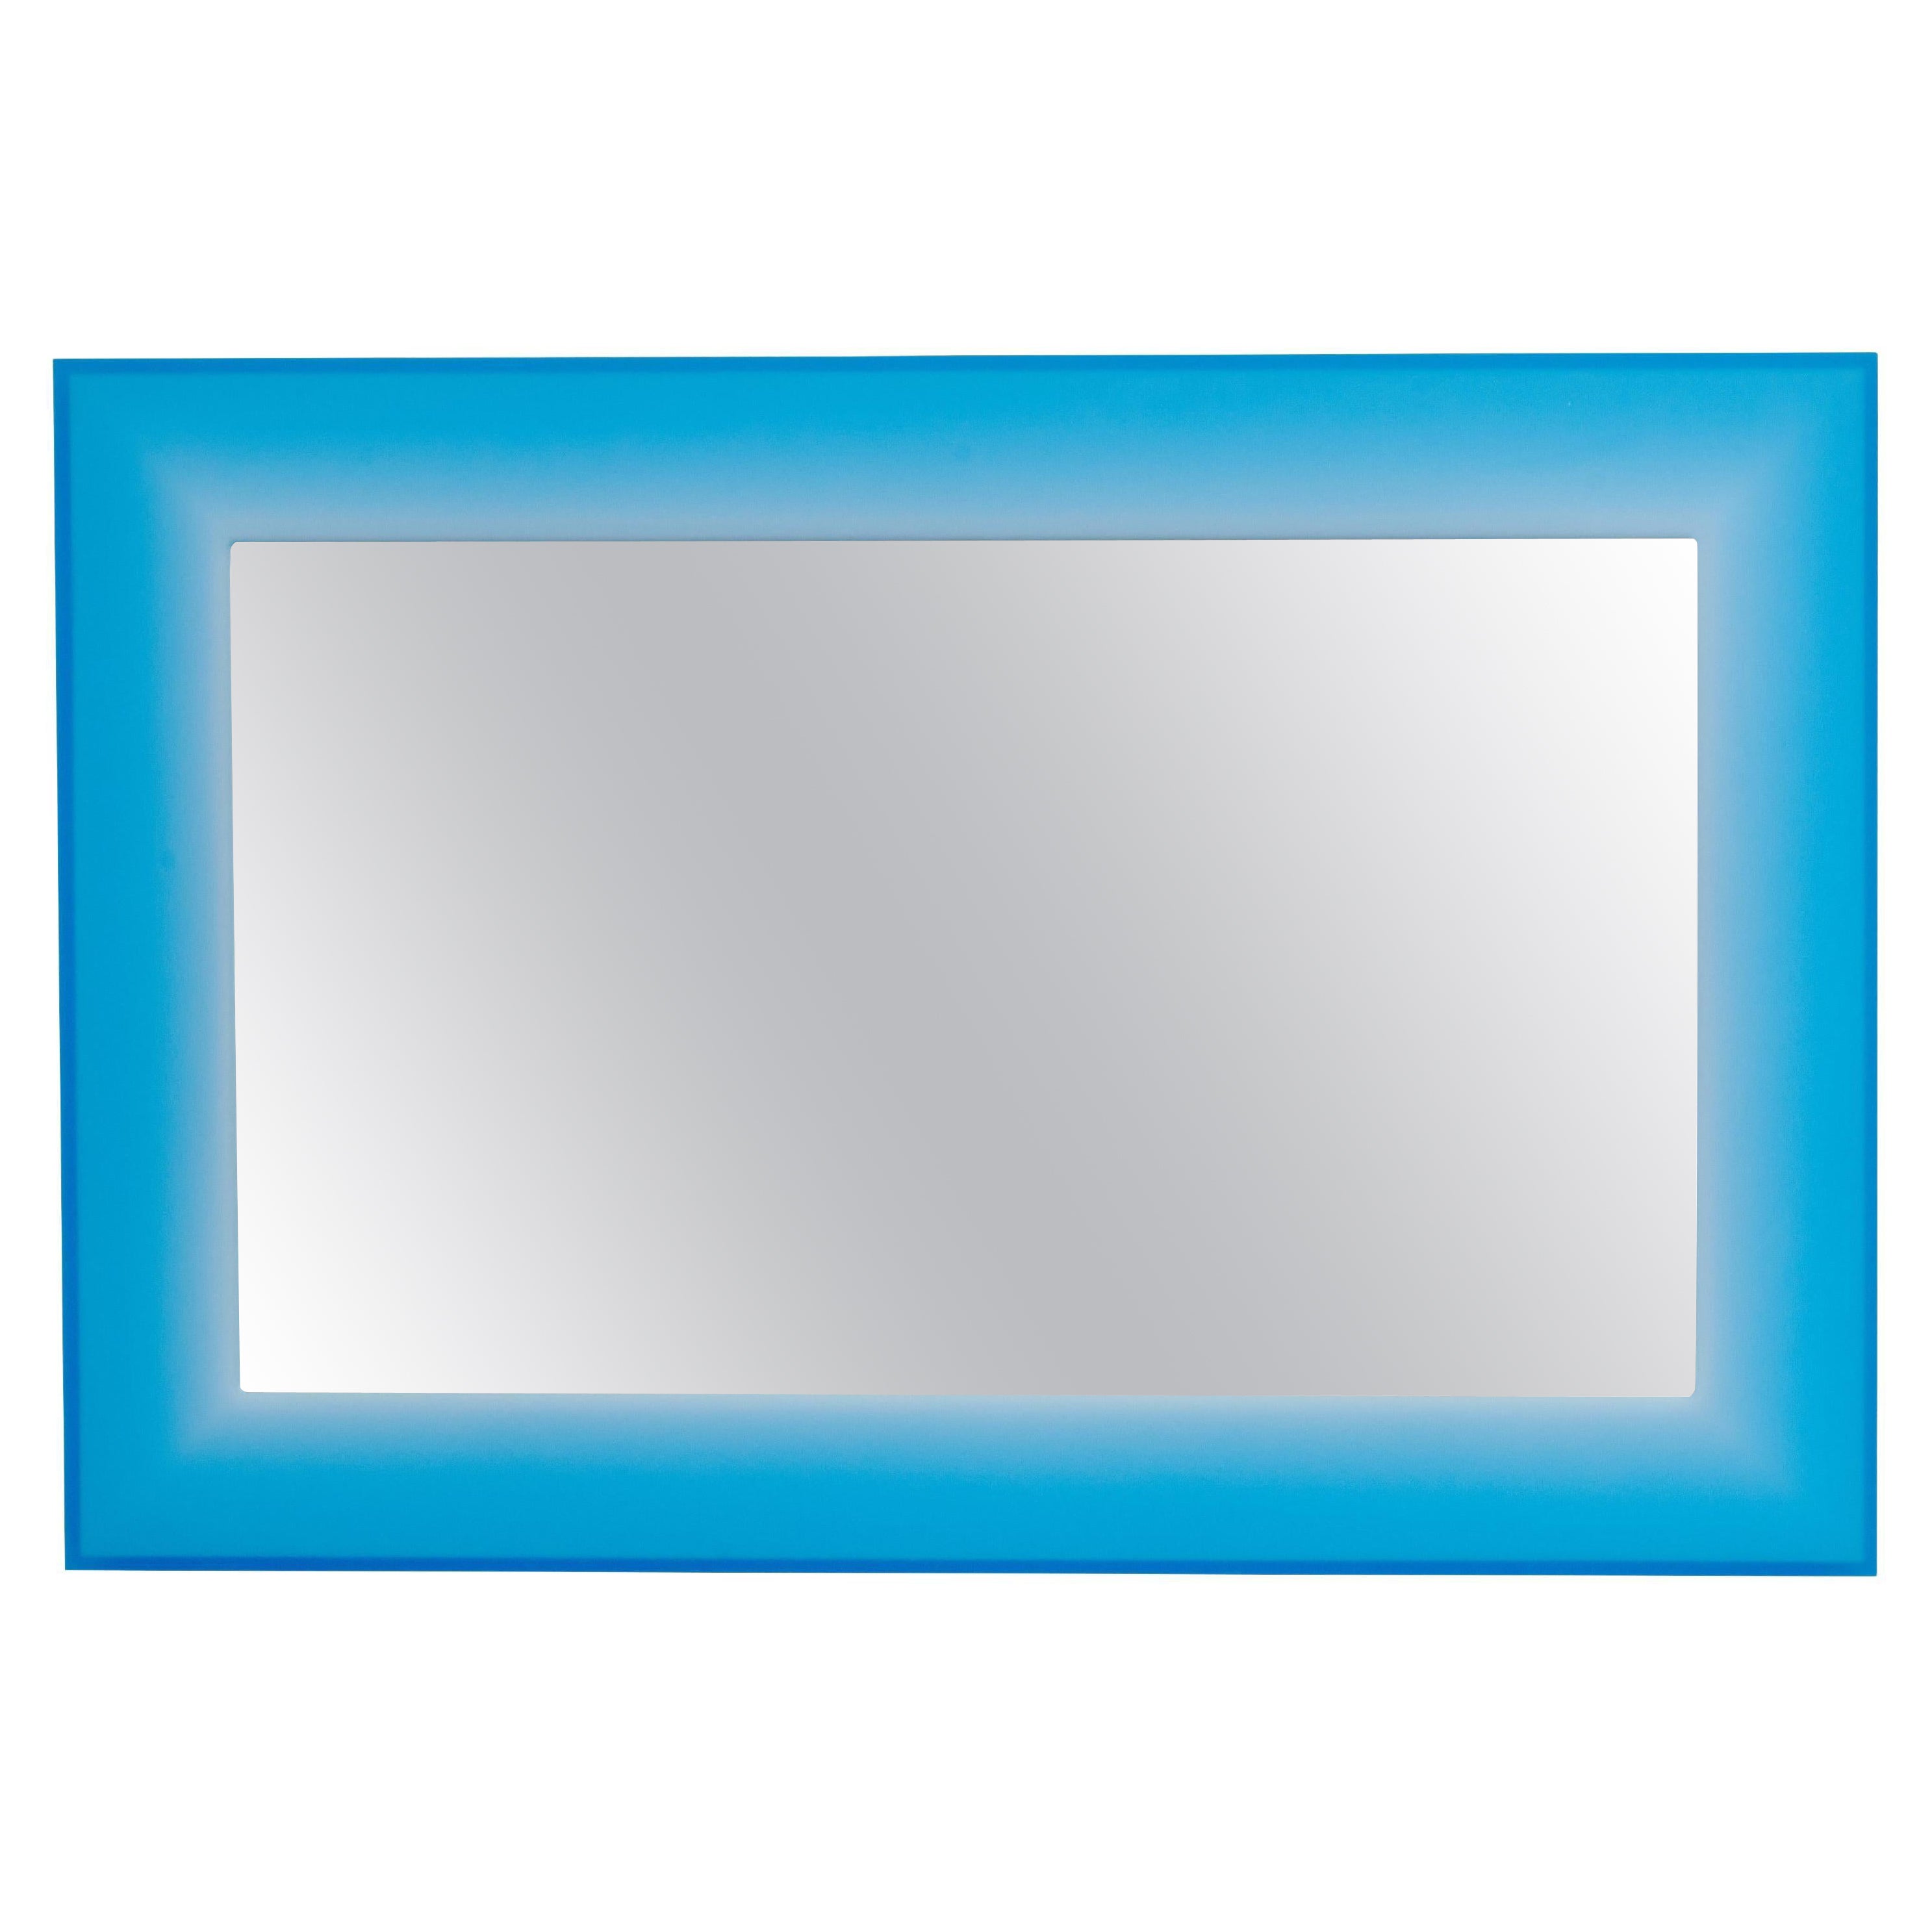 Rechteckiger Harzspiegel in Blau von Facture, präsentiert von Tuleste Factory